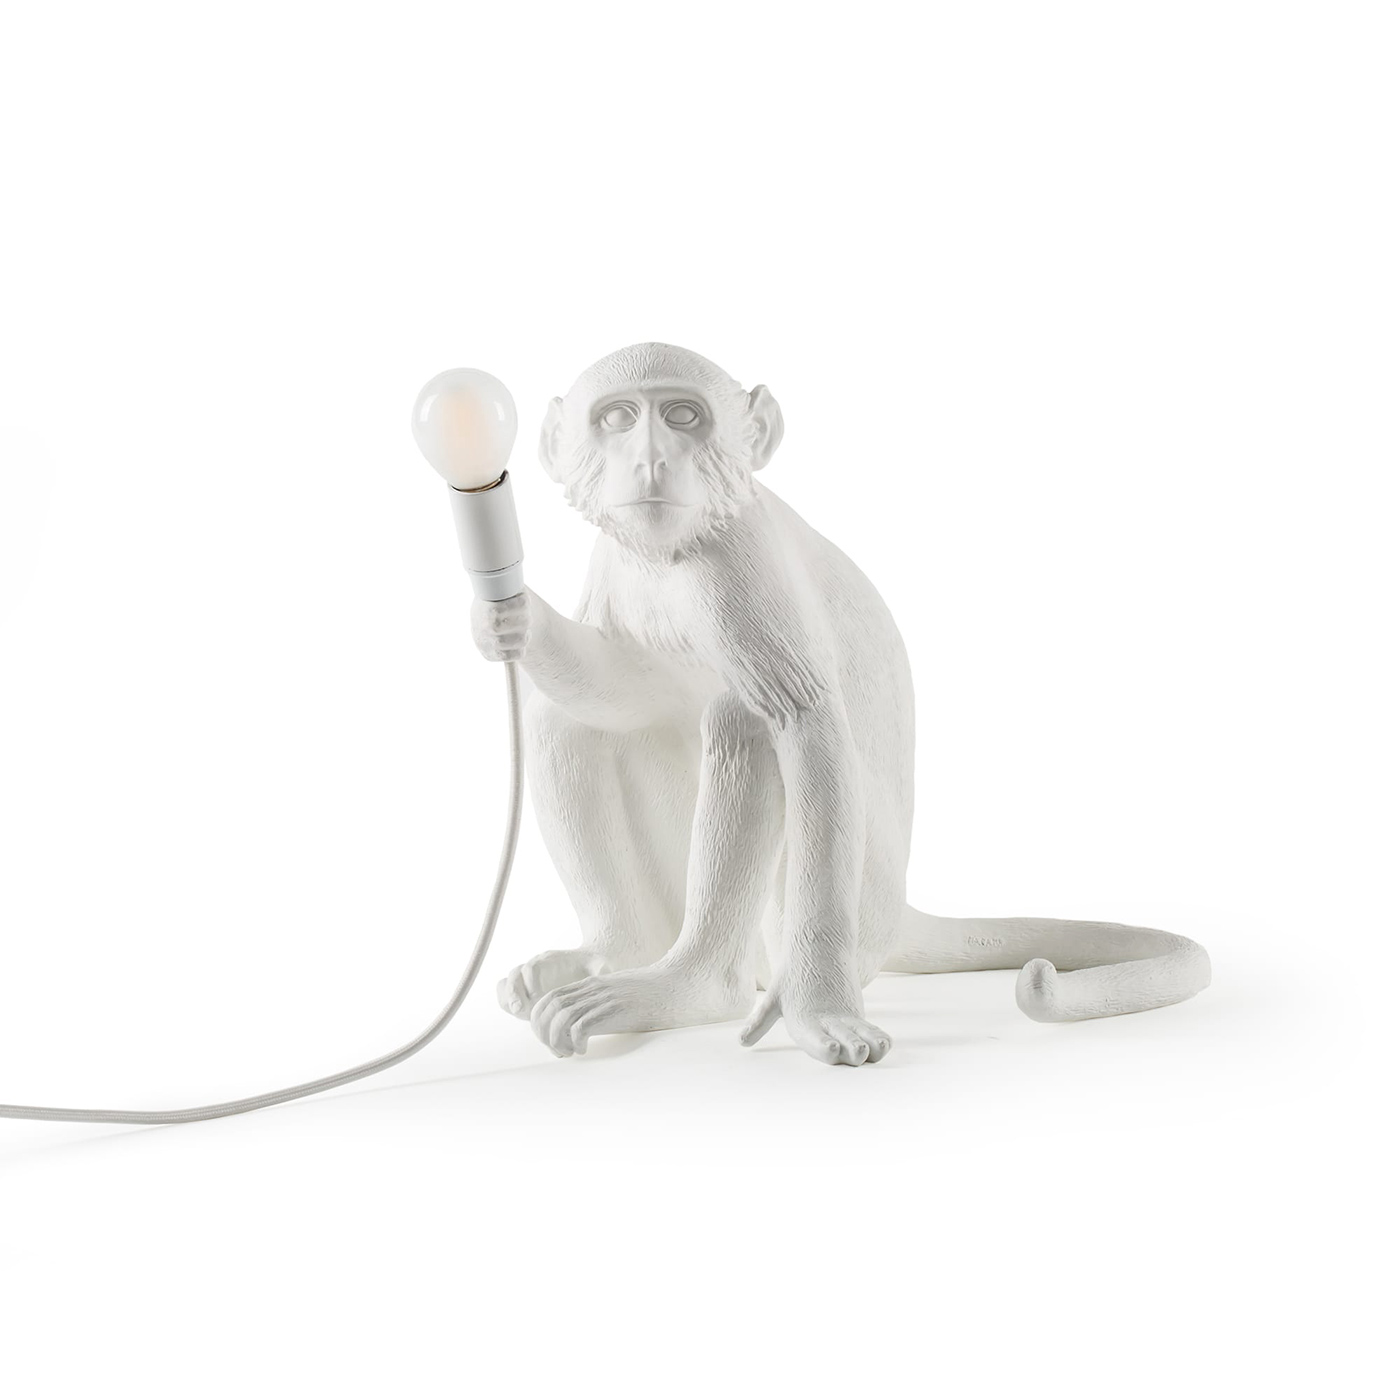 Настольная лампа Monkey Lamp Sitting